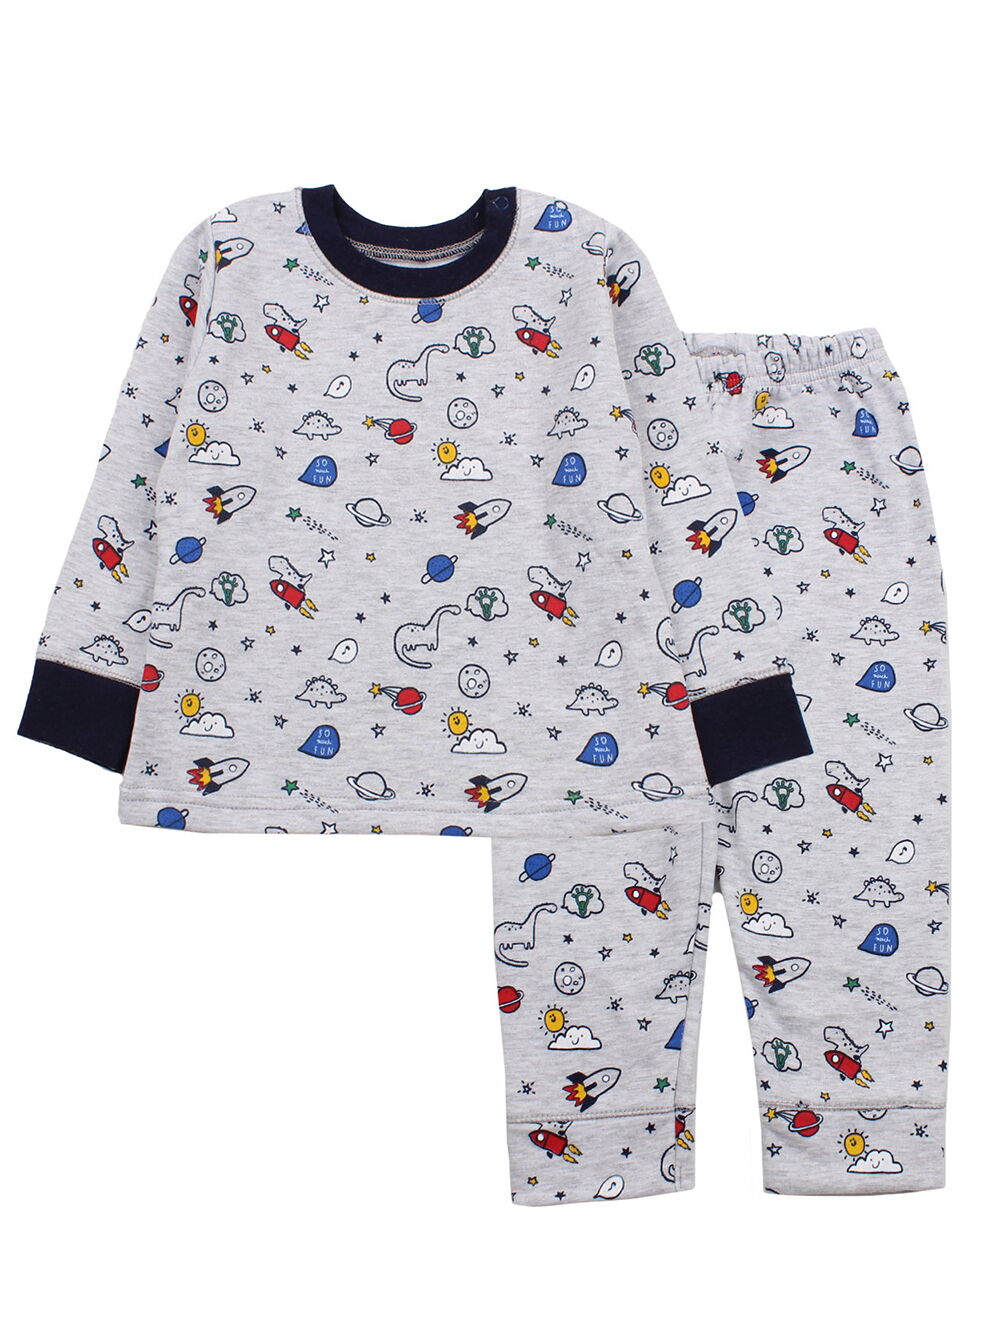 Утепленнная пижама для мальчика Фламинго Космос серая 109-307 - цена